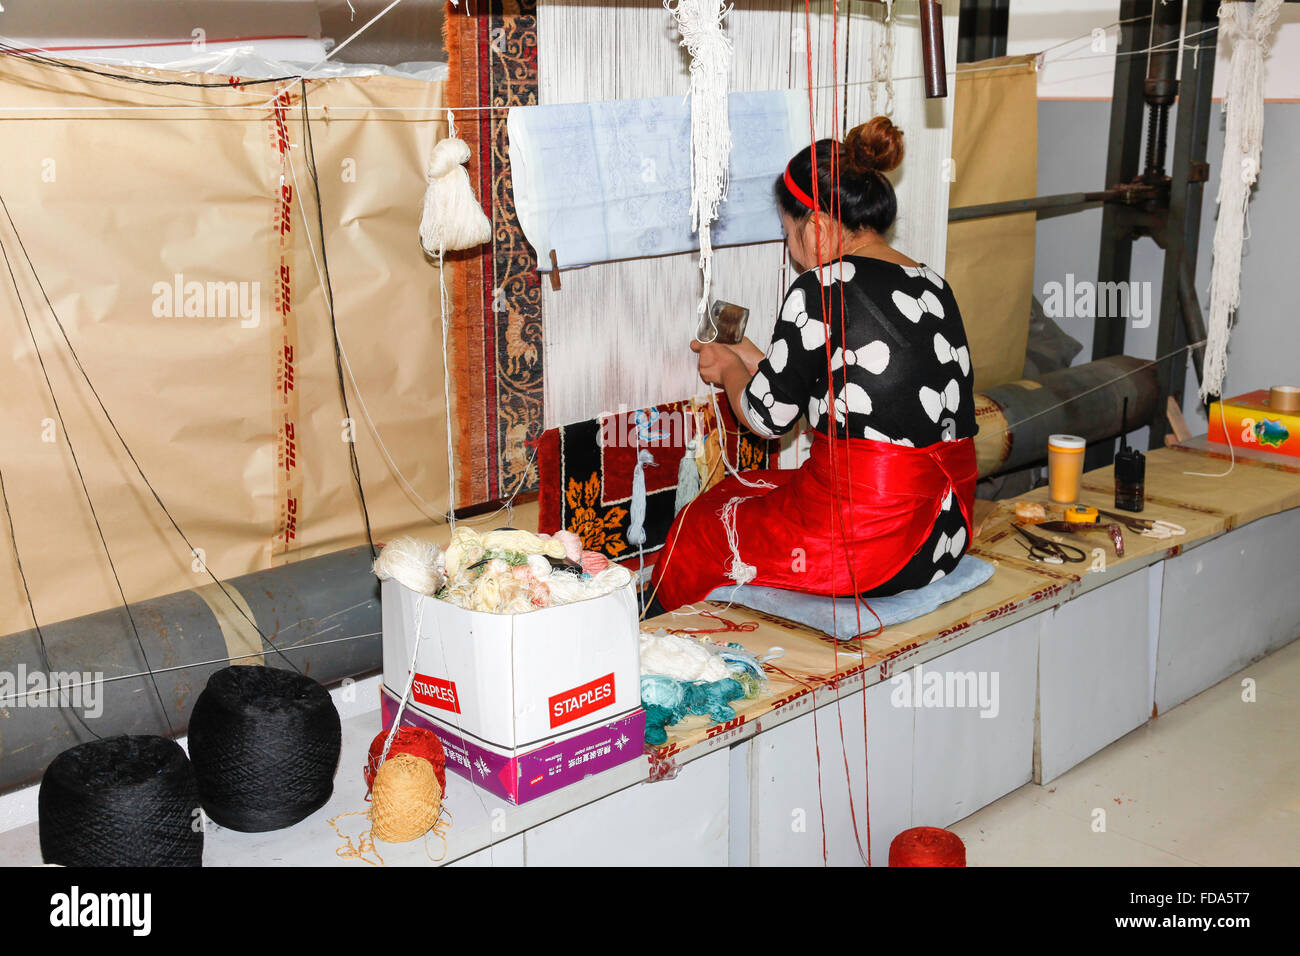 Femme chinoise travaillant dans l'usine de soie à Hotan Chine Banque D'Images